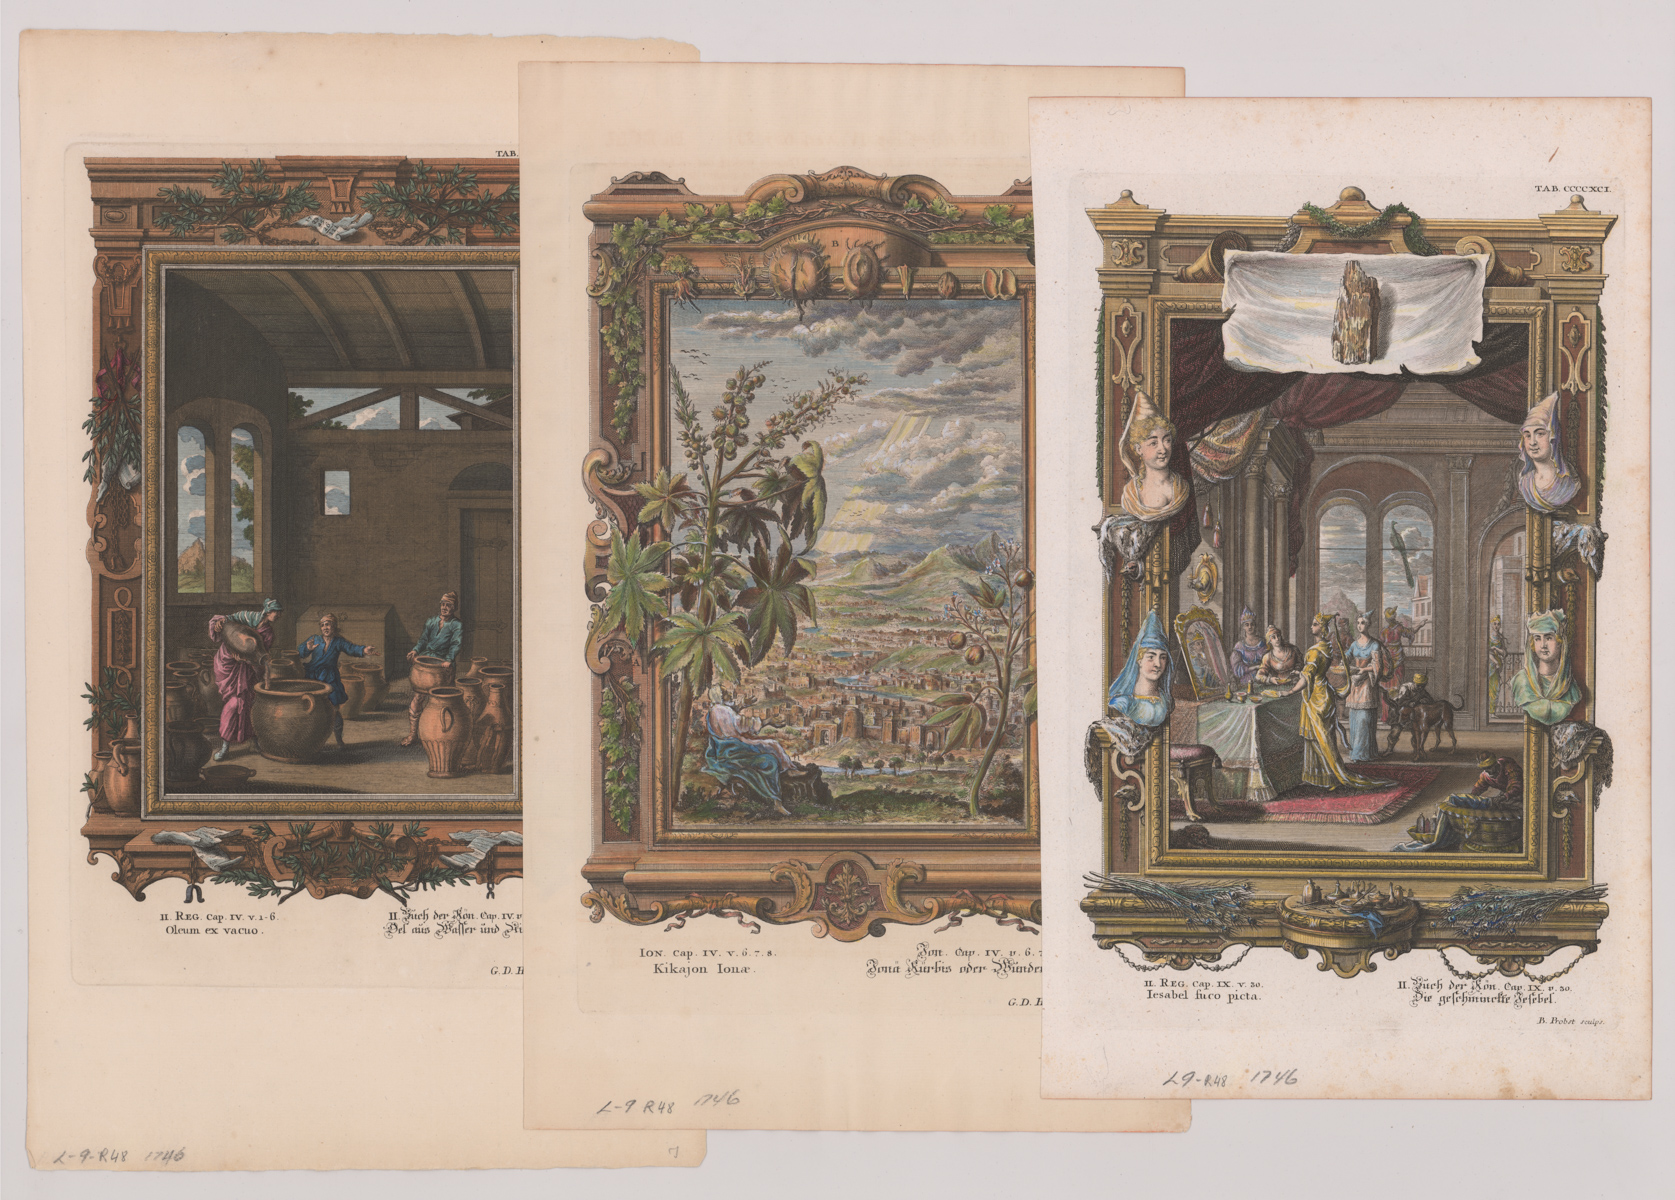 Group of Prints by G. D. Heuman / I. G. Pintz 1746